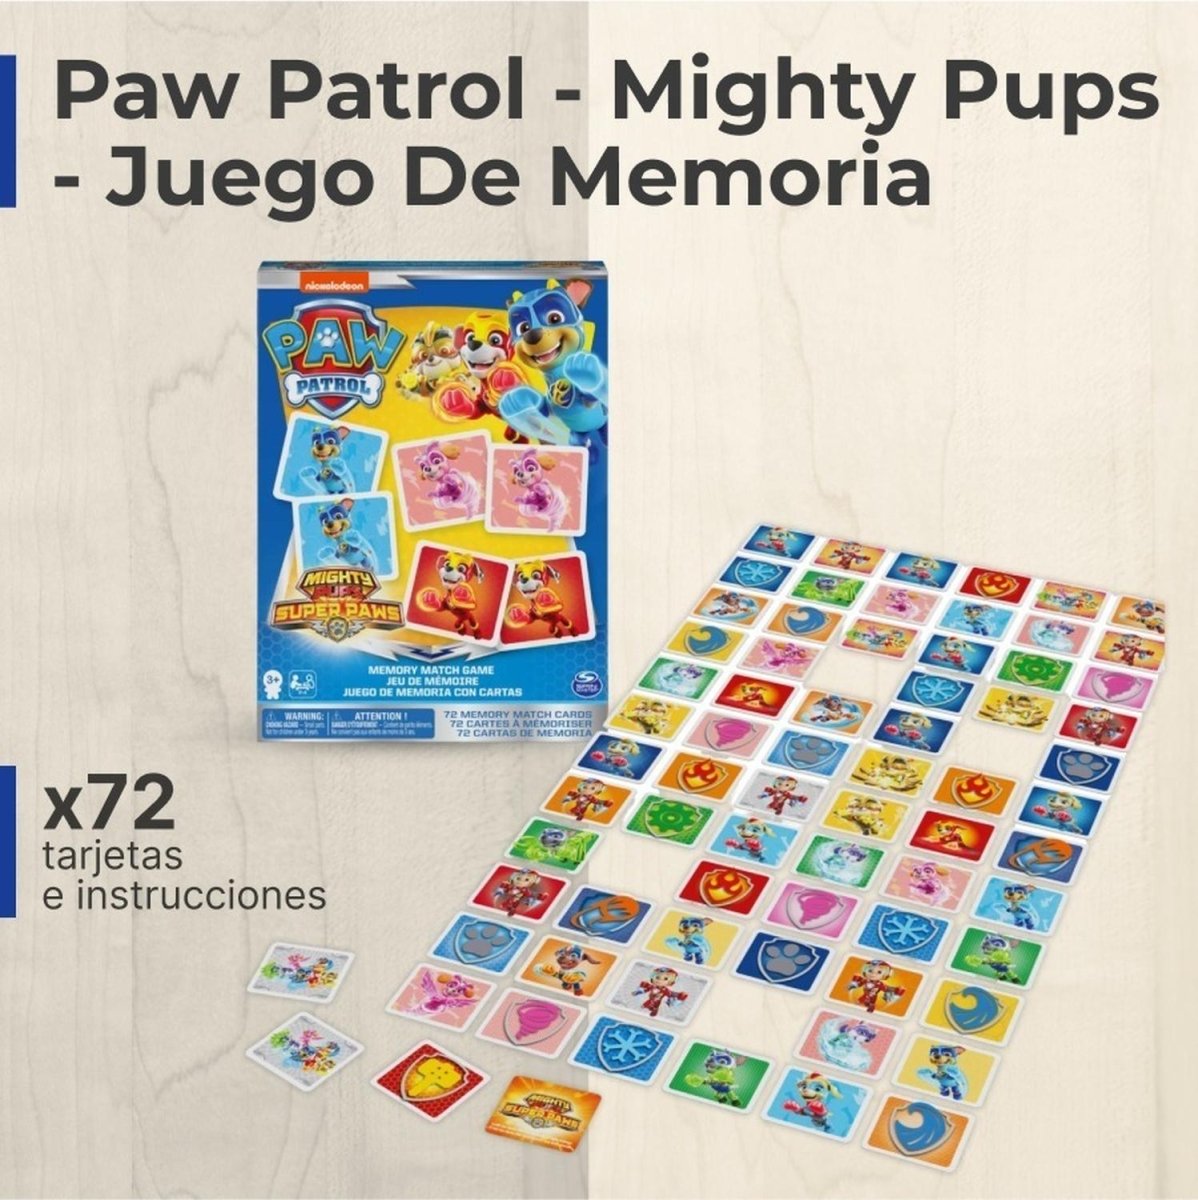 Paw Patrol - Mighty Pups - Juego De Memoria - Spin Master - COMERCIAL BELSAN -